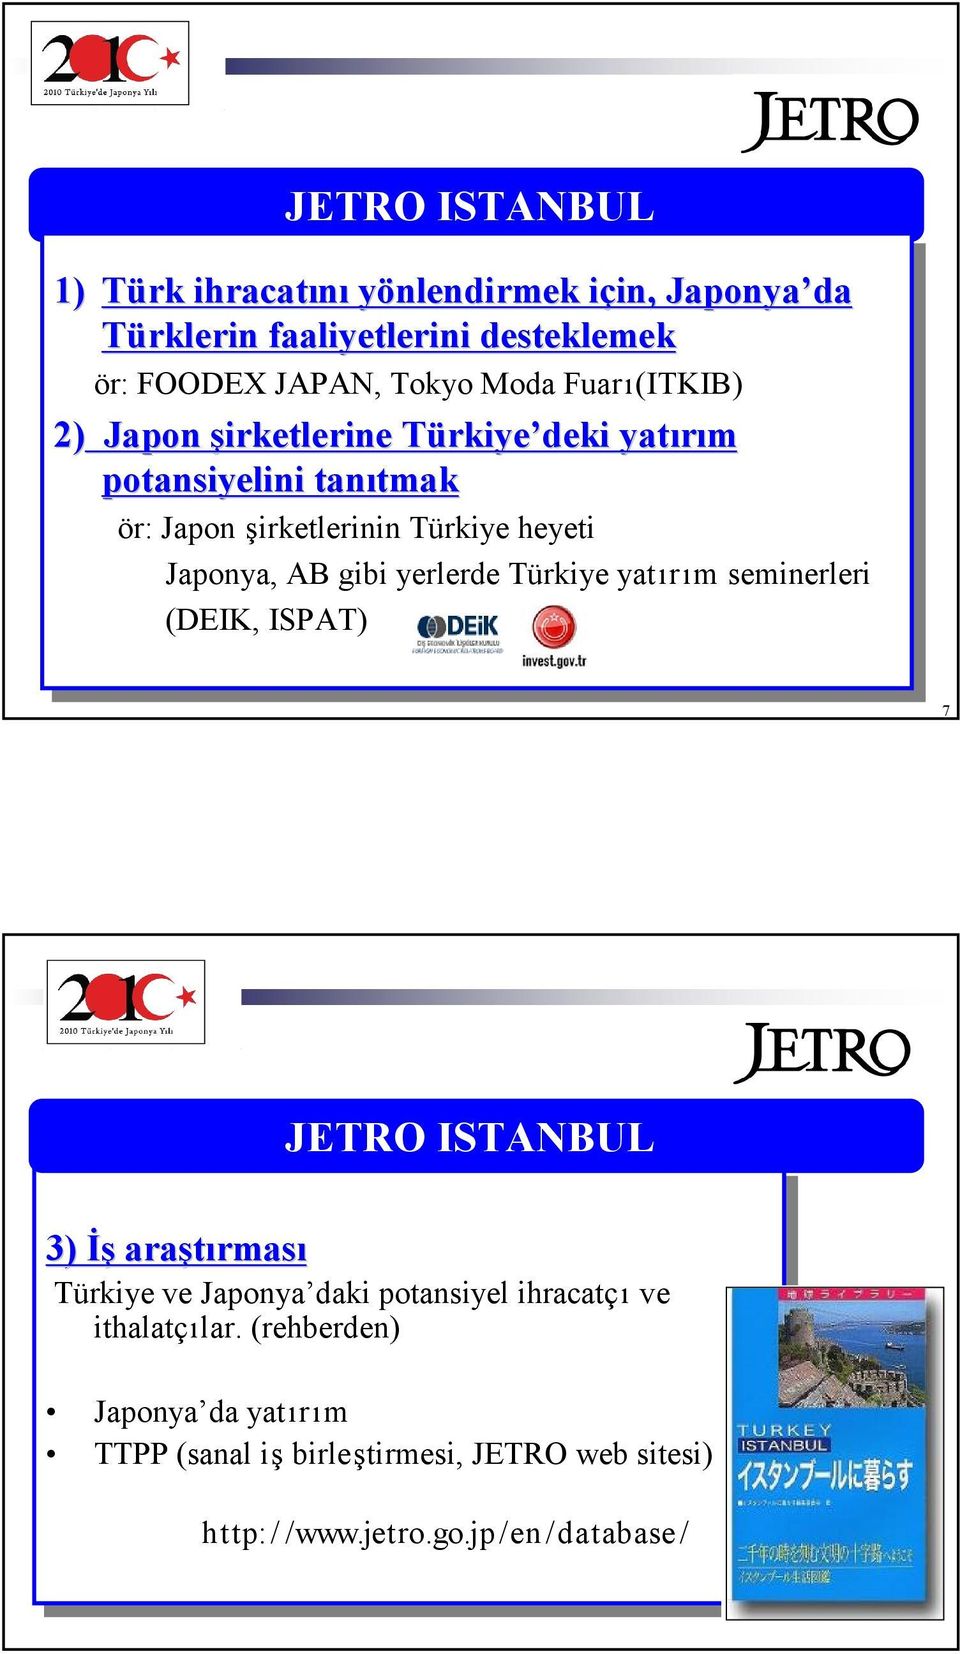 gibi gibi yerlerde yerlerde Türkiye Türkiye yatır yatırım ım seminerleri seminerleri (DEIK, (DEIK, ISPAT) ISPAT) 7 JETRO ISTANBUL 3) 3) Đş Đş araştırması rması Türkiye Türkiye ve ve Japonya daki